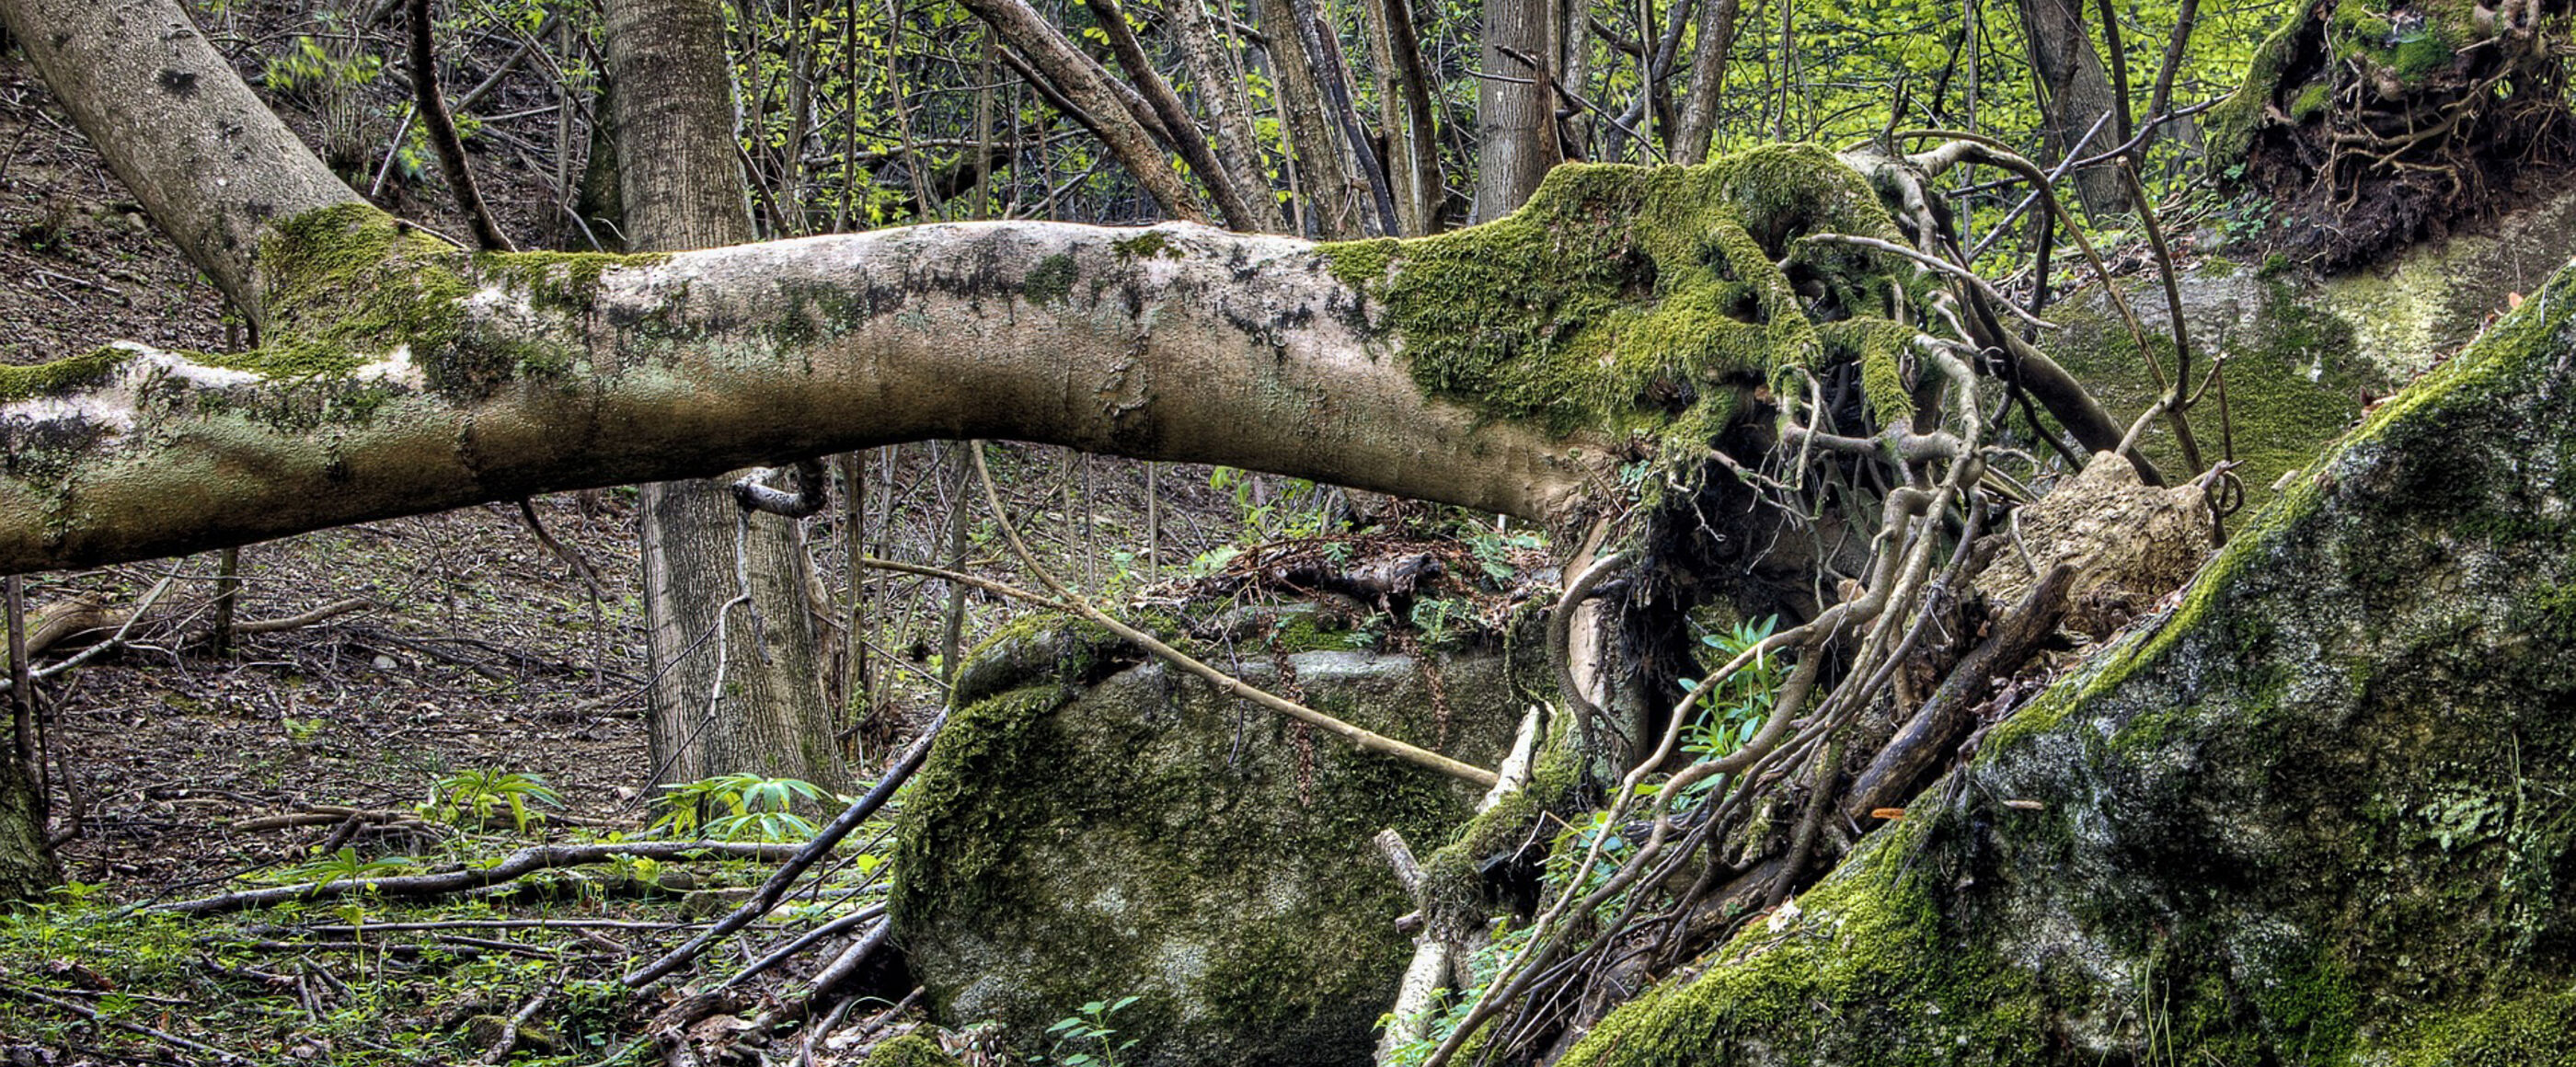 Ein entwurzelter Baum in einem Wald.